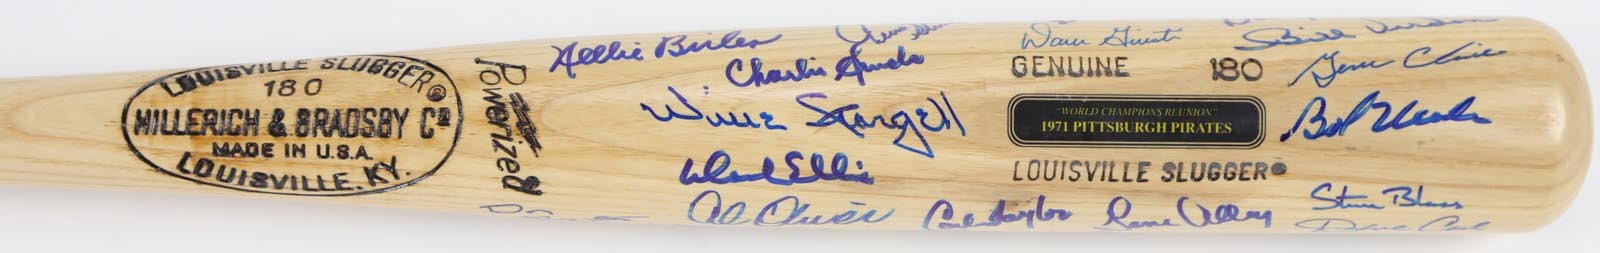 - 1971 Pittsburgh Pirates "World Champions Reunion" Signed Bat (23)